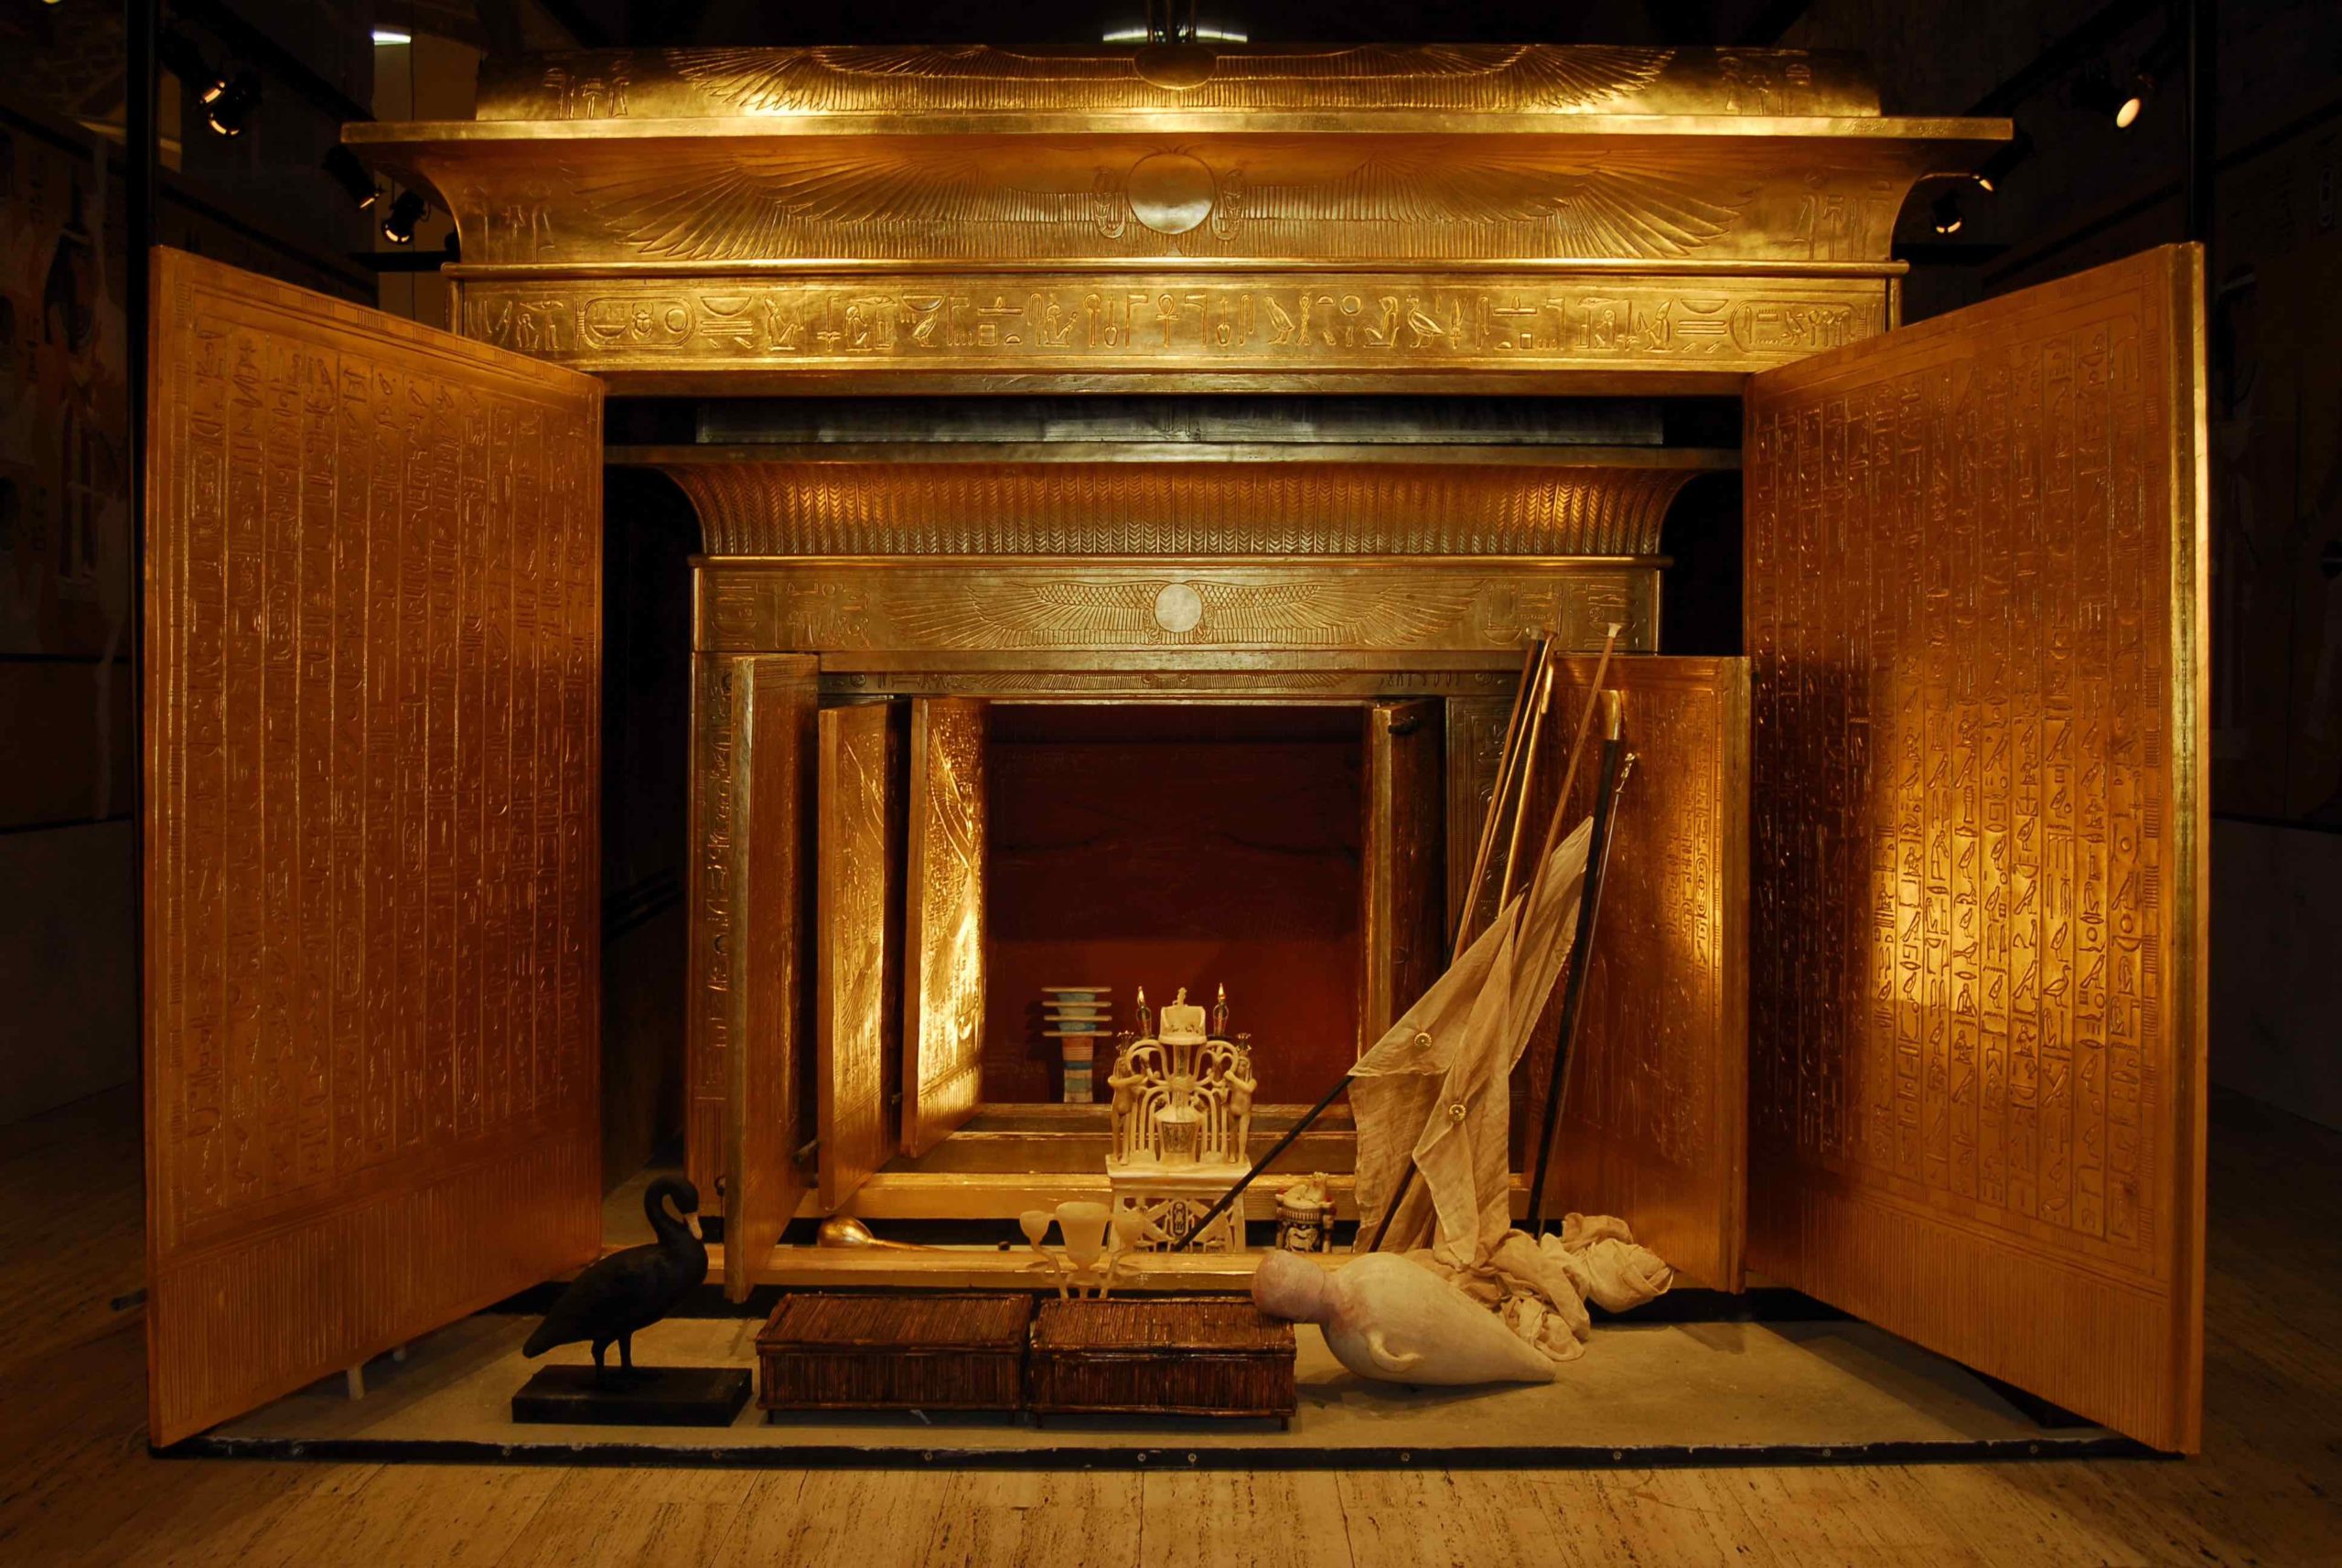 Tutankhamun exhibition Brussels - Opened shrine